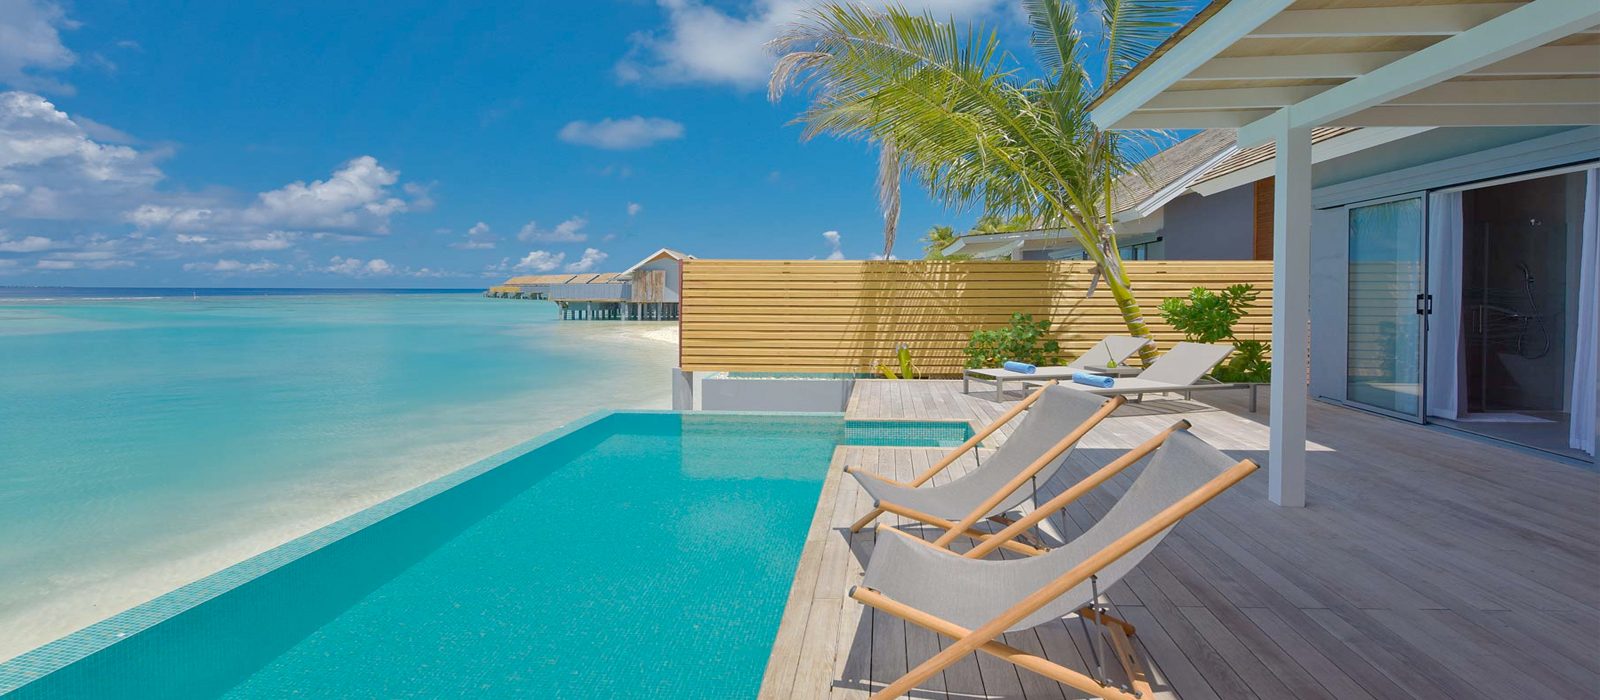 Kuramathi Maldives Luxury Luxury Maldives Holiday Packages Header